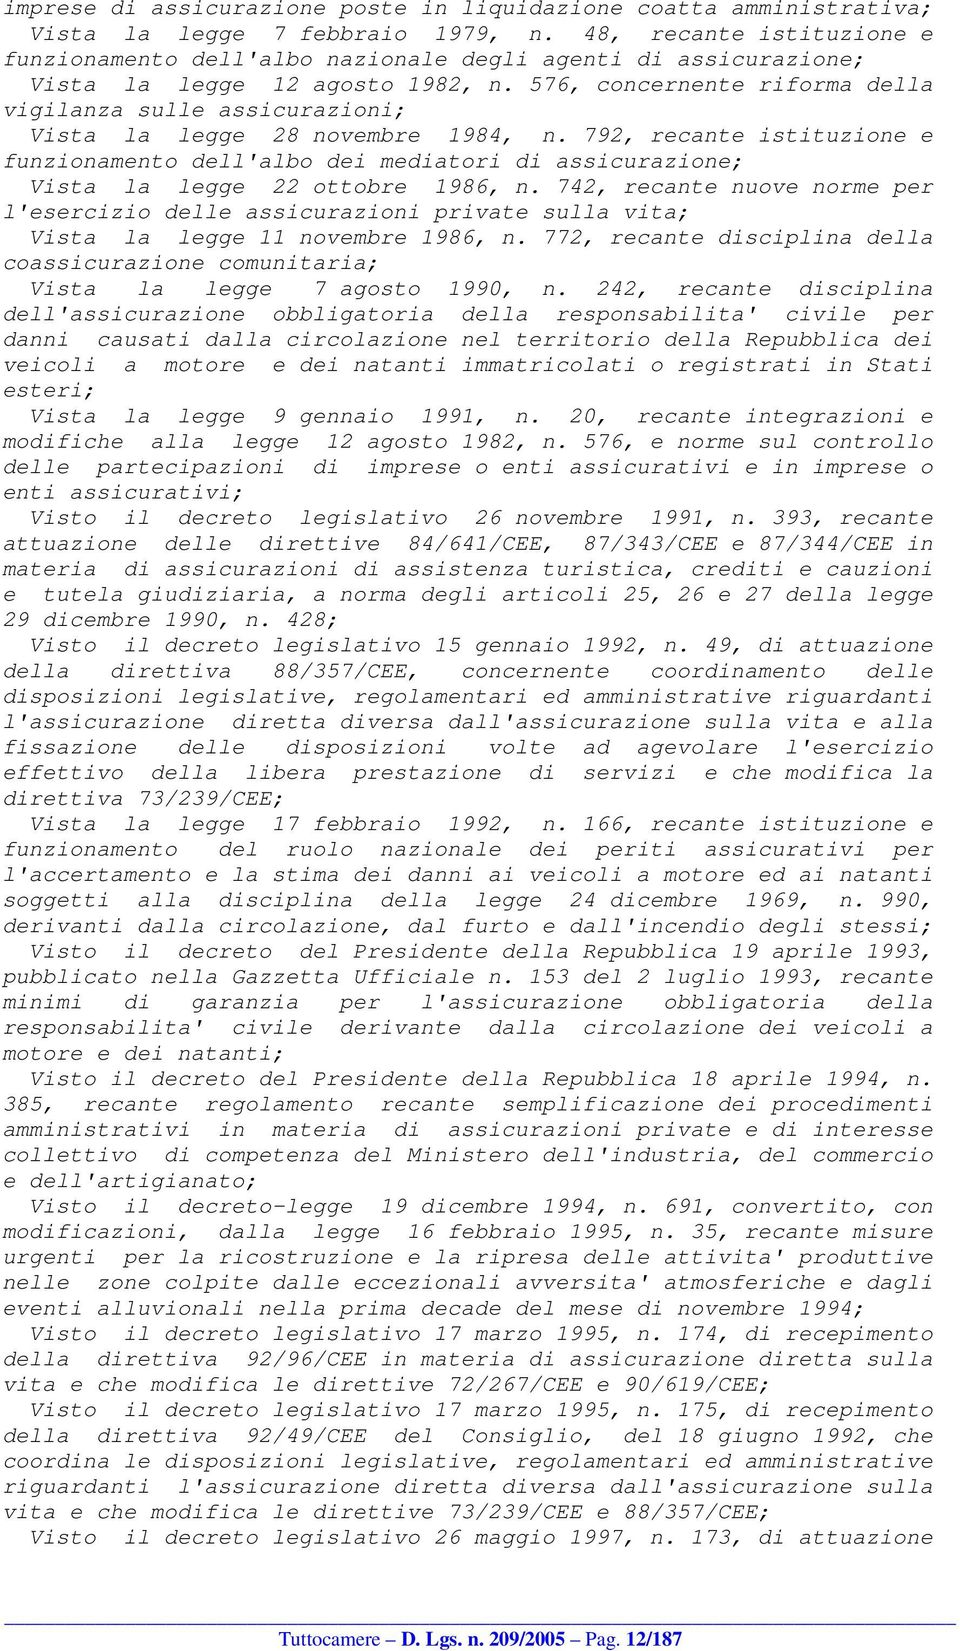 576, concernente riforma della vigilanza sulle assicurazioni; Vista la legge 28 novembre 1984, n.